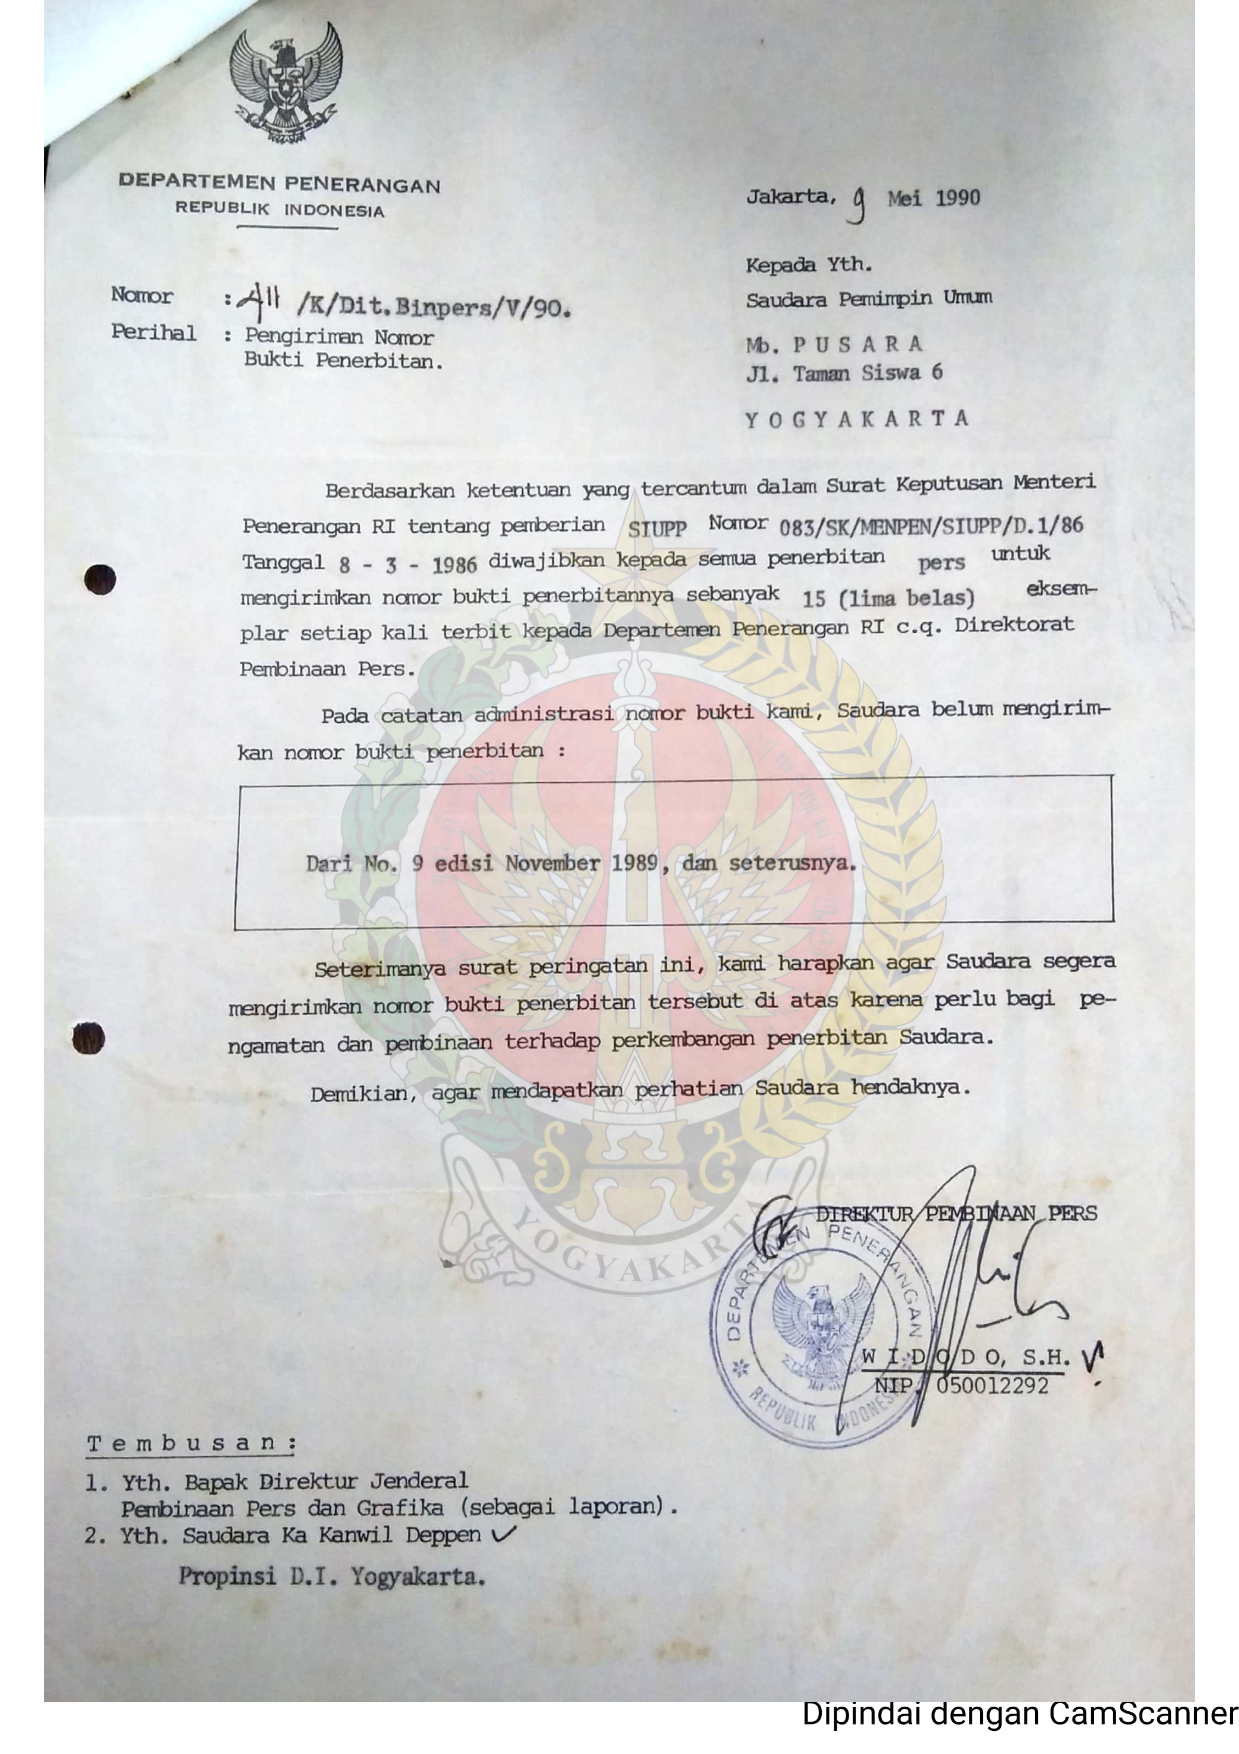         Surat dari   Direktur Pembinaan Pers Departemen Penerangan Republik Indoesia kepada   Pemimpin Umum Majalah Bulanan Pusara perihal PengirimanNomor Bukti Penerbitan dari No. 9 Edisi November   1989 danseterusnya.